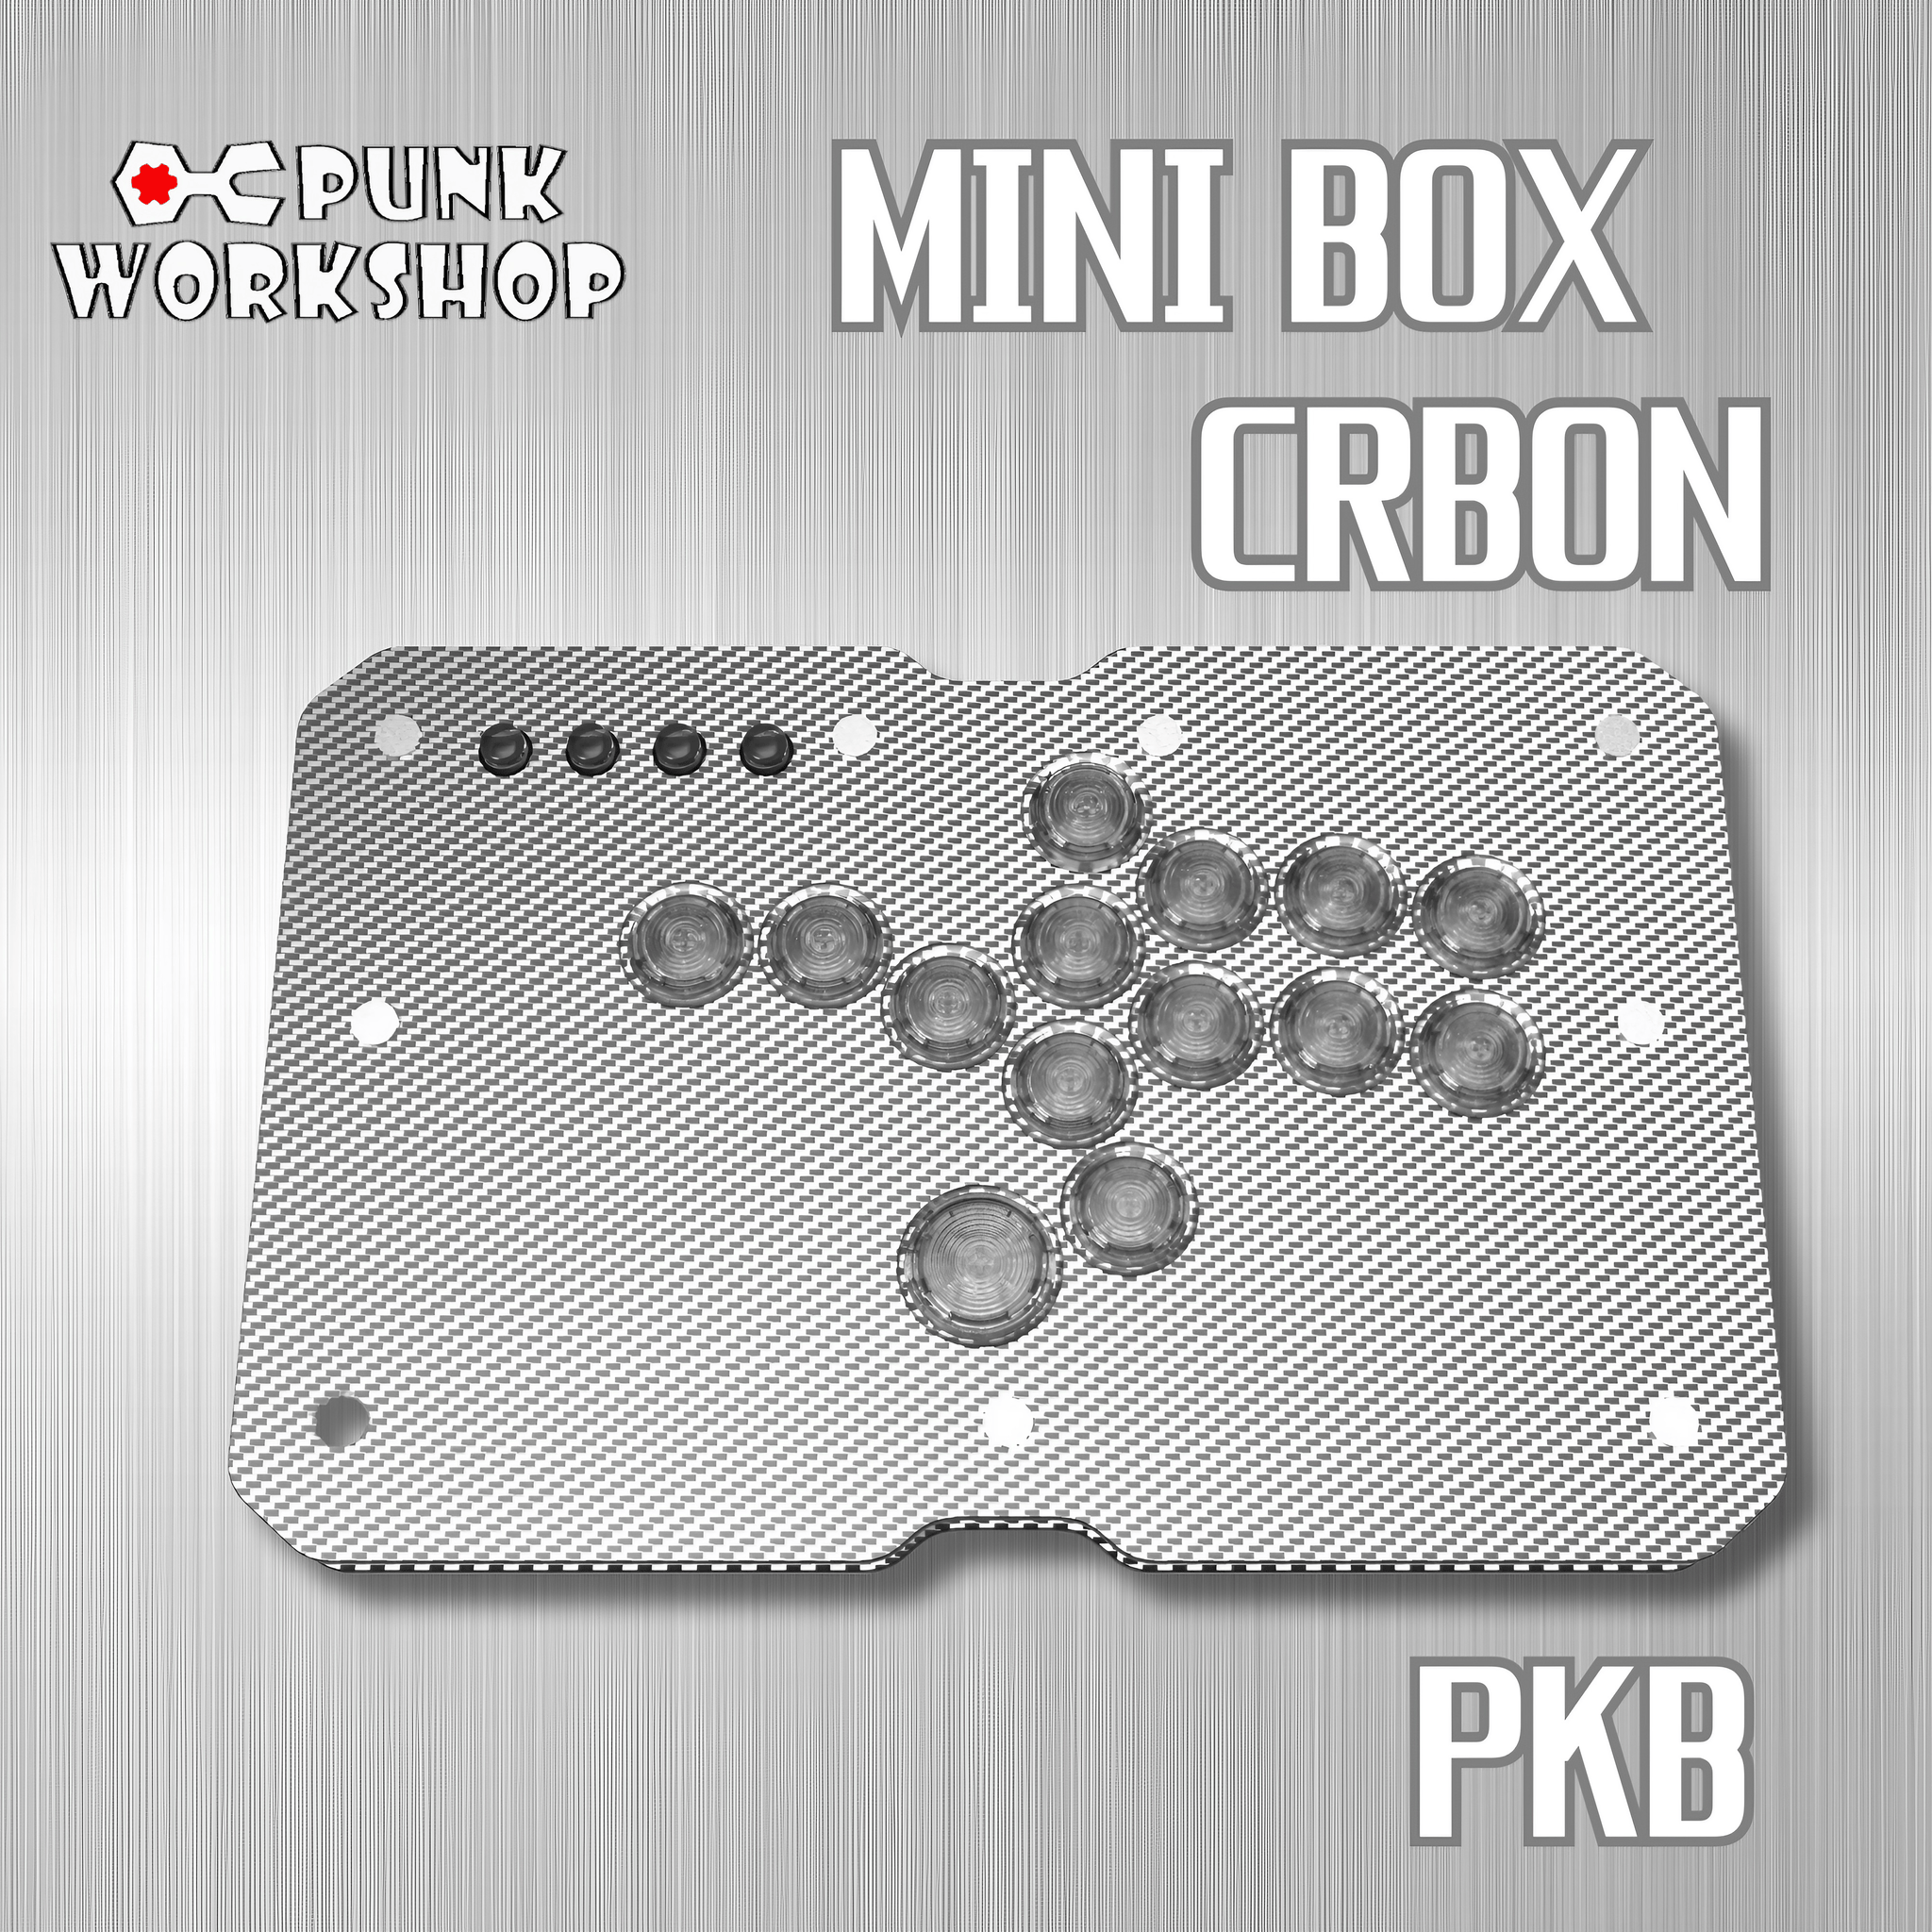 アケコン レバーレス ゲームパッド 通販ショップ ゲームコントローラー専門店 CIELOGAMES レバーレス PUNK WORKSHOP MINIBOX CARBON PKB Silver  